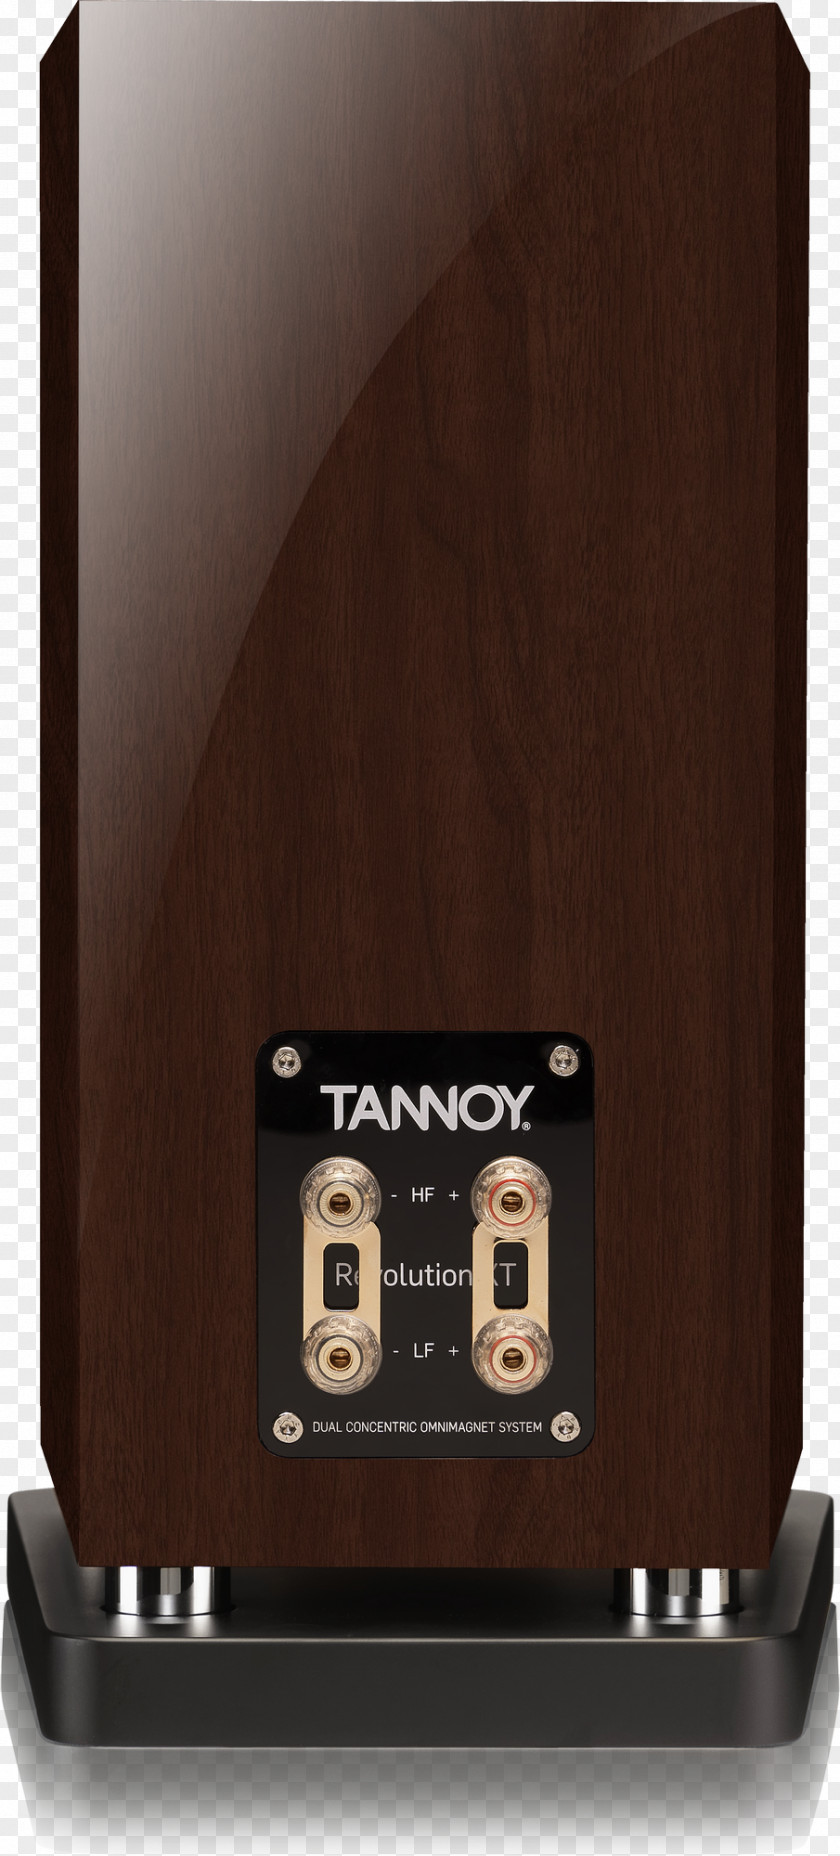 Tannoy 800 Revolution XT 6 Speakers Loudspeaker Bookshelf Speaker Stands PNG